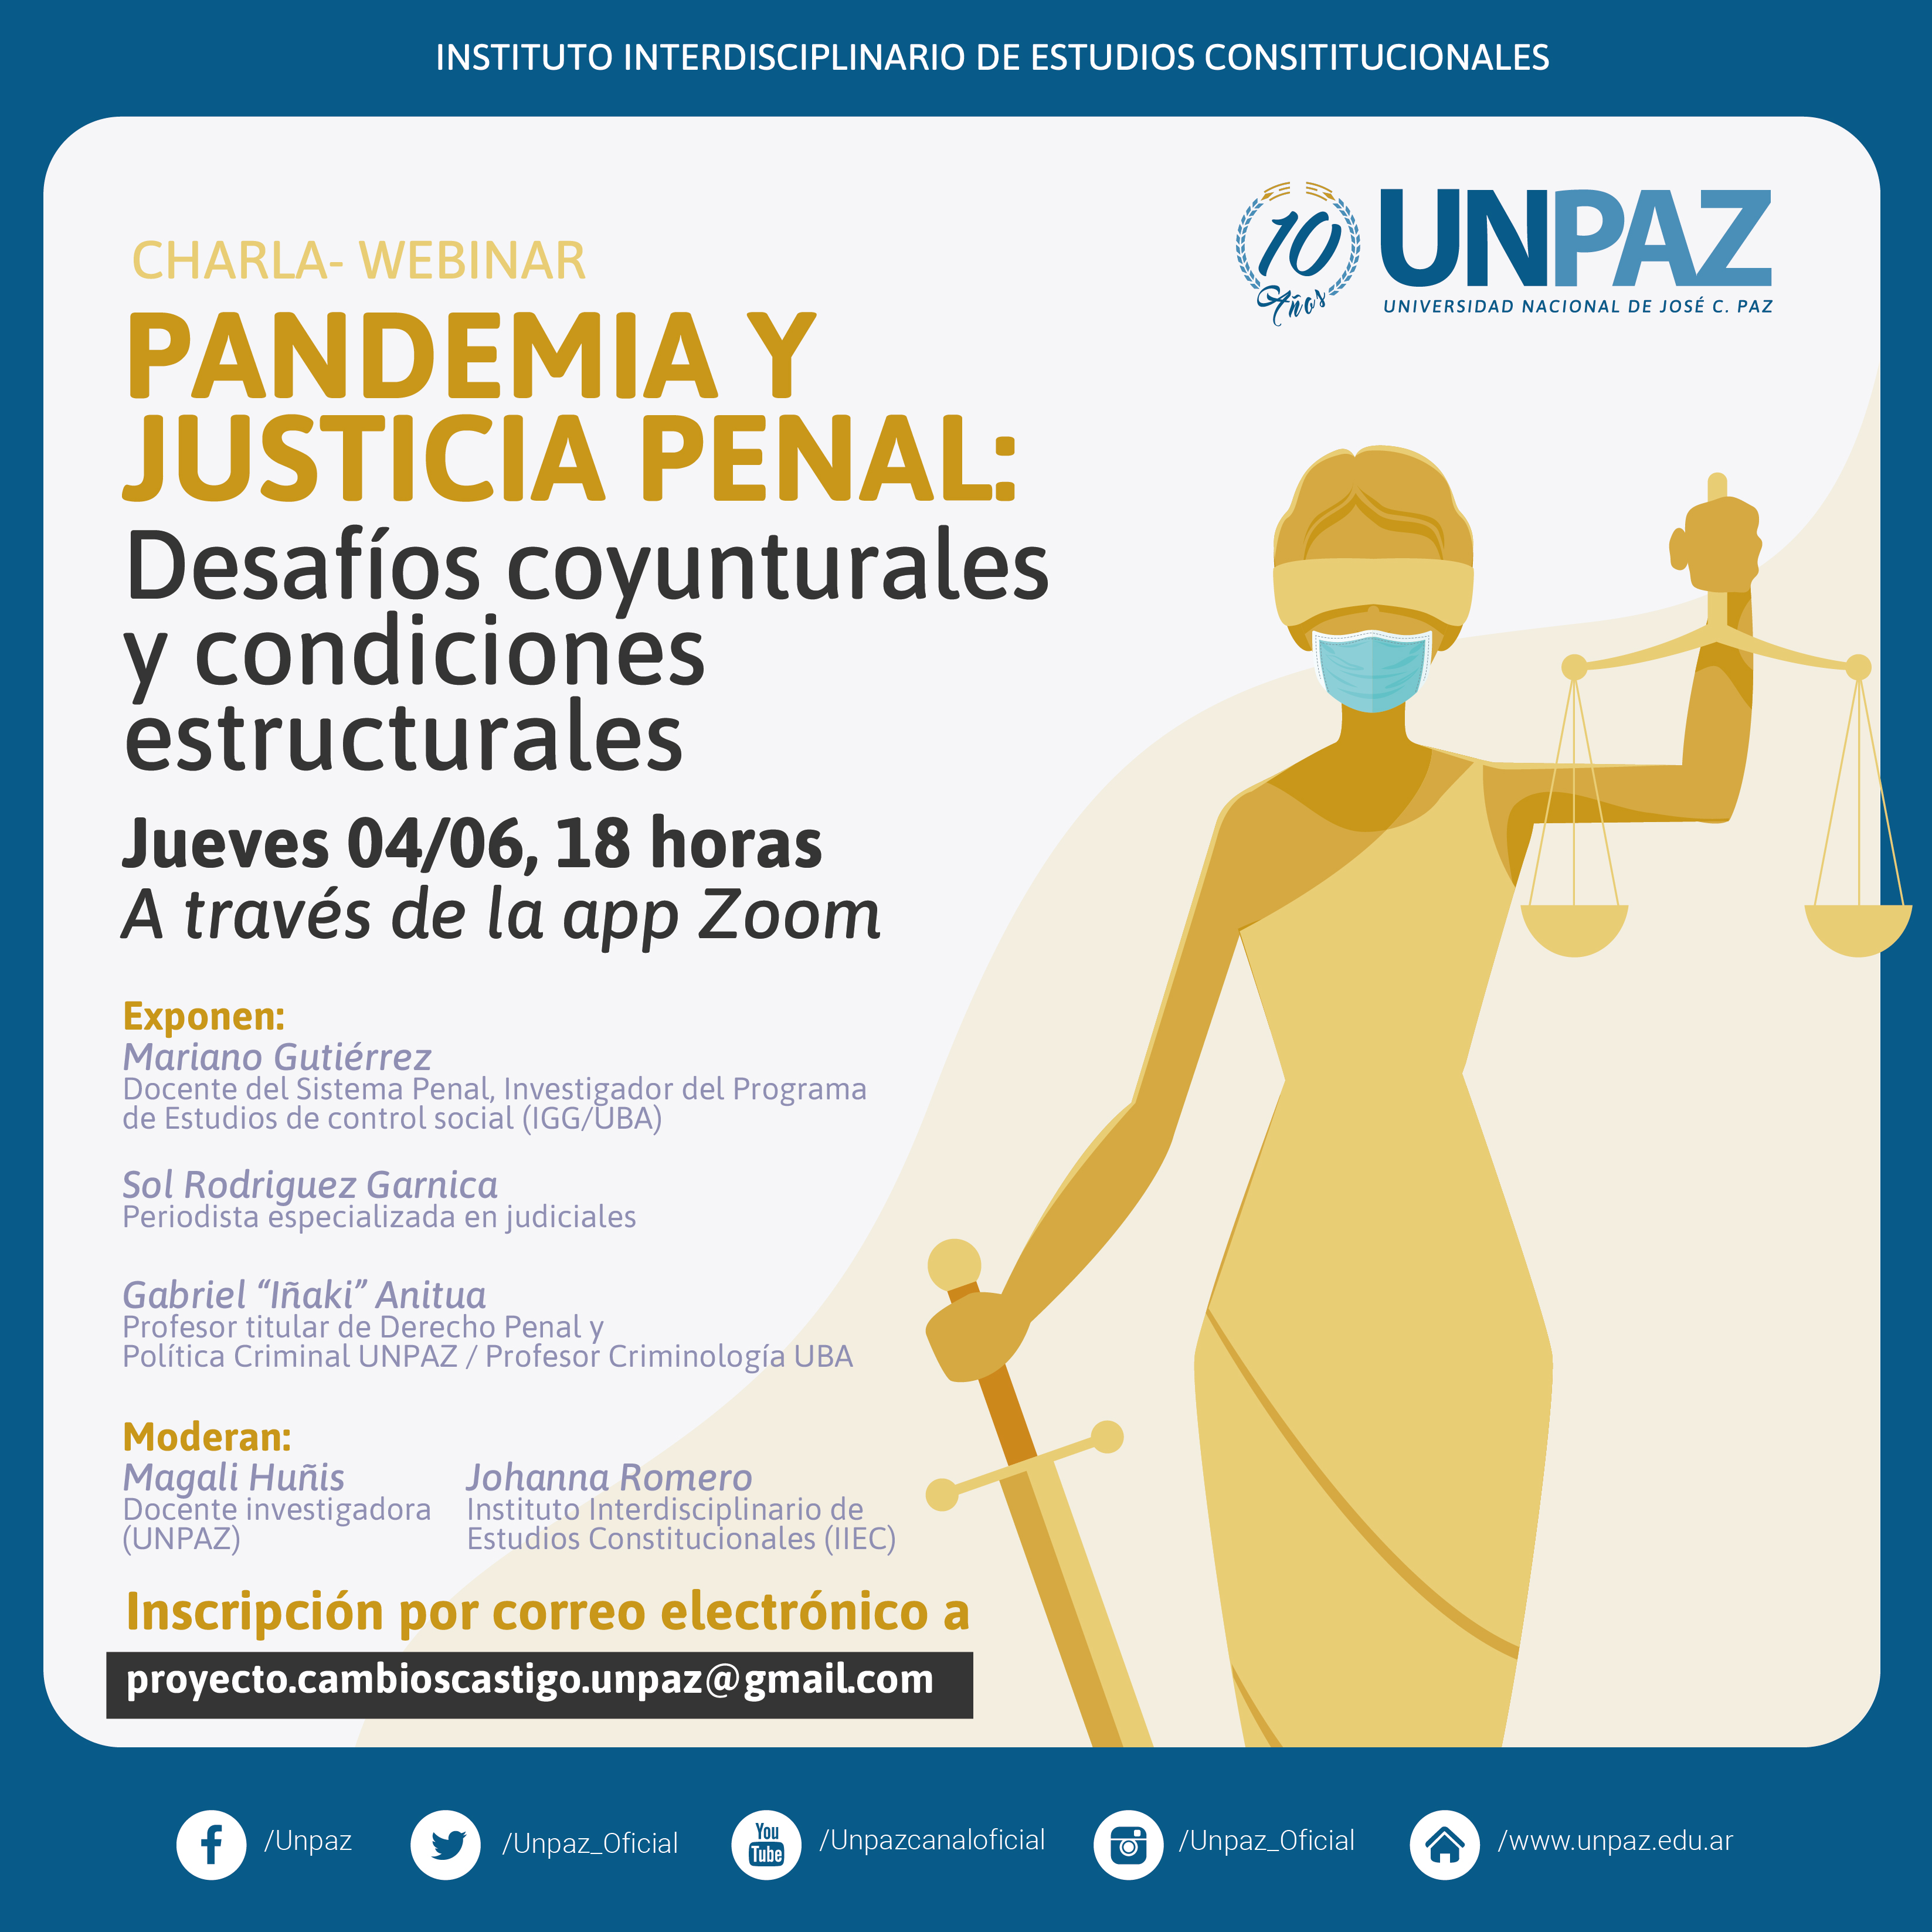 CHARLA- WEBINAR. PANDEMIA Y JUSTICIA PENAL: DESAFÍOS COYUNTURALES Y CONDICIONES ESTRUCTURALES